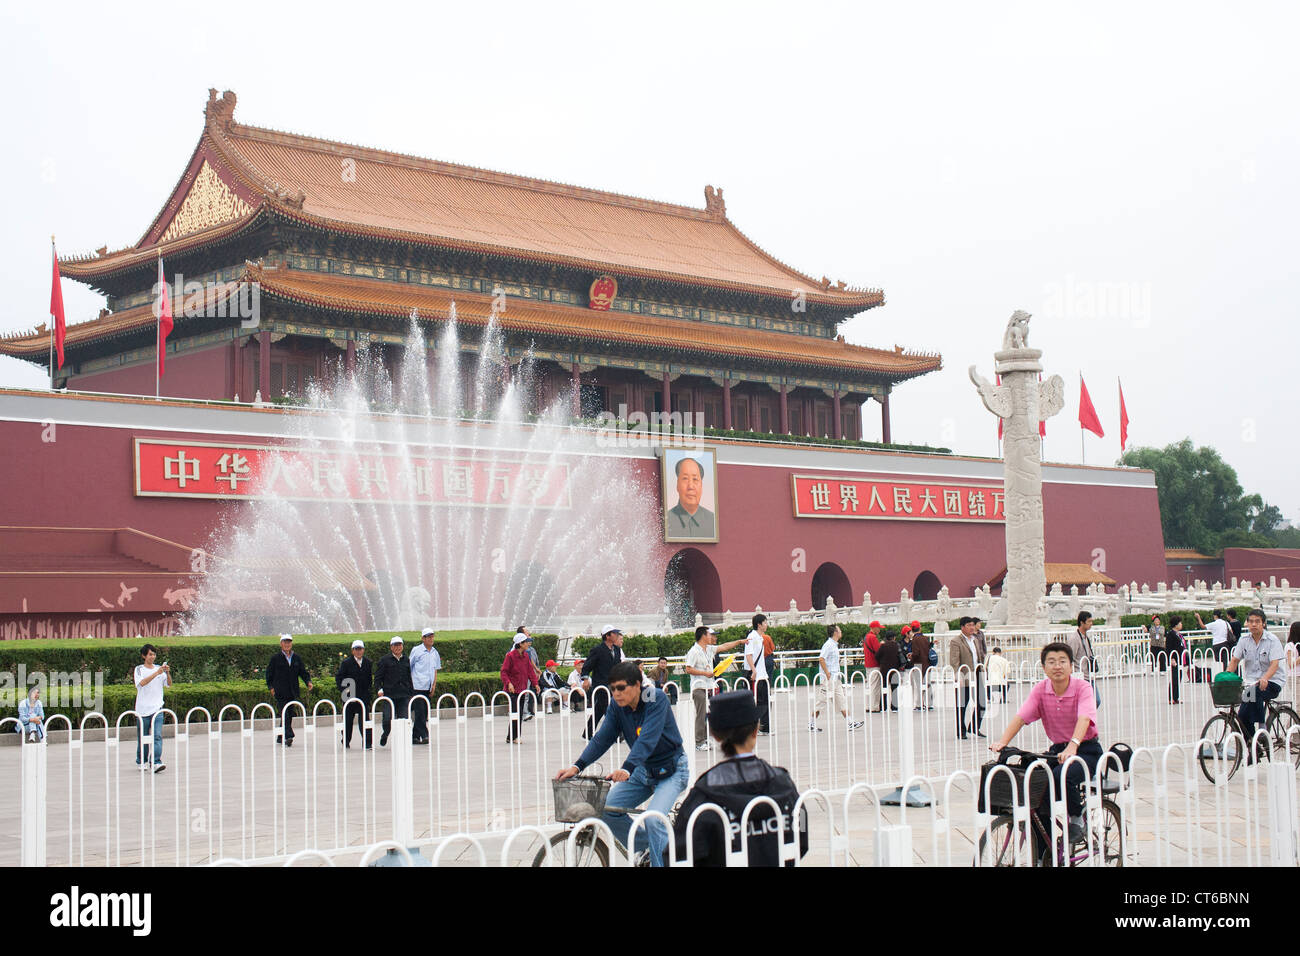 Une fontaine d'eau met en évidence la tombe de leader chinois Mao Zedong à Beijing la Chine durant les Jeux Paralympiques de 2008 Banque D'Images